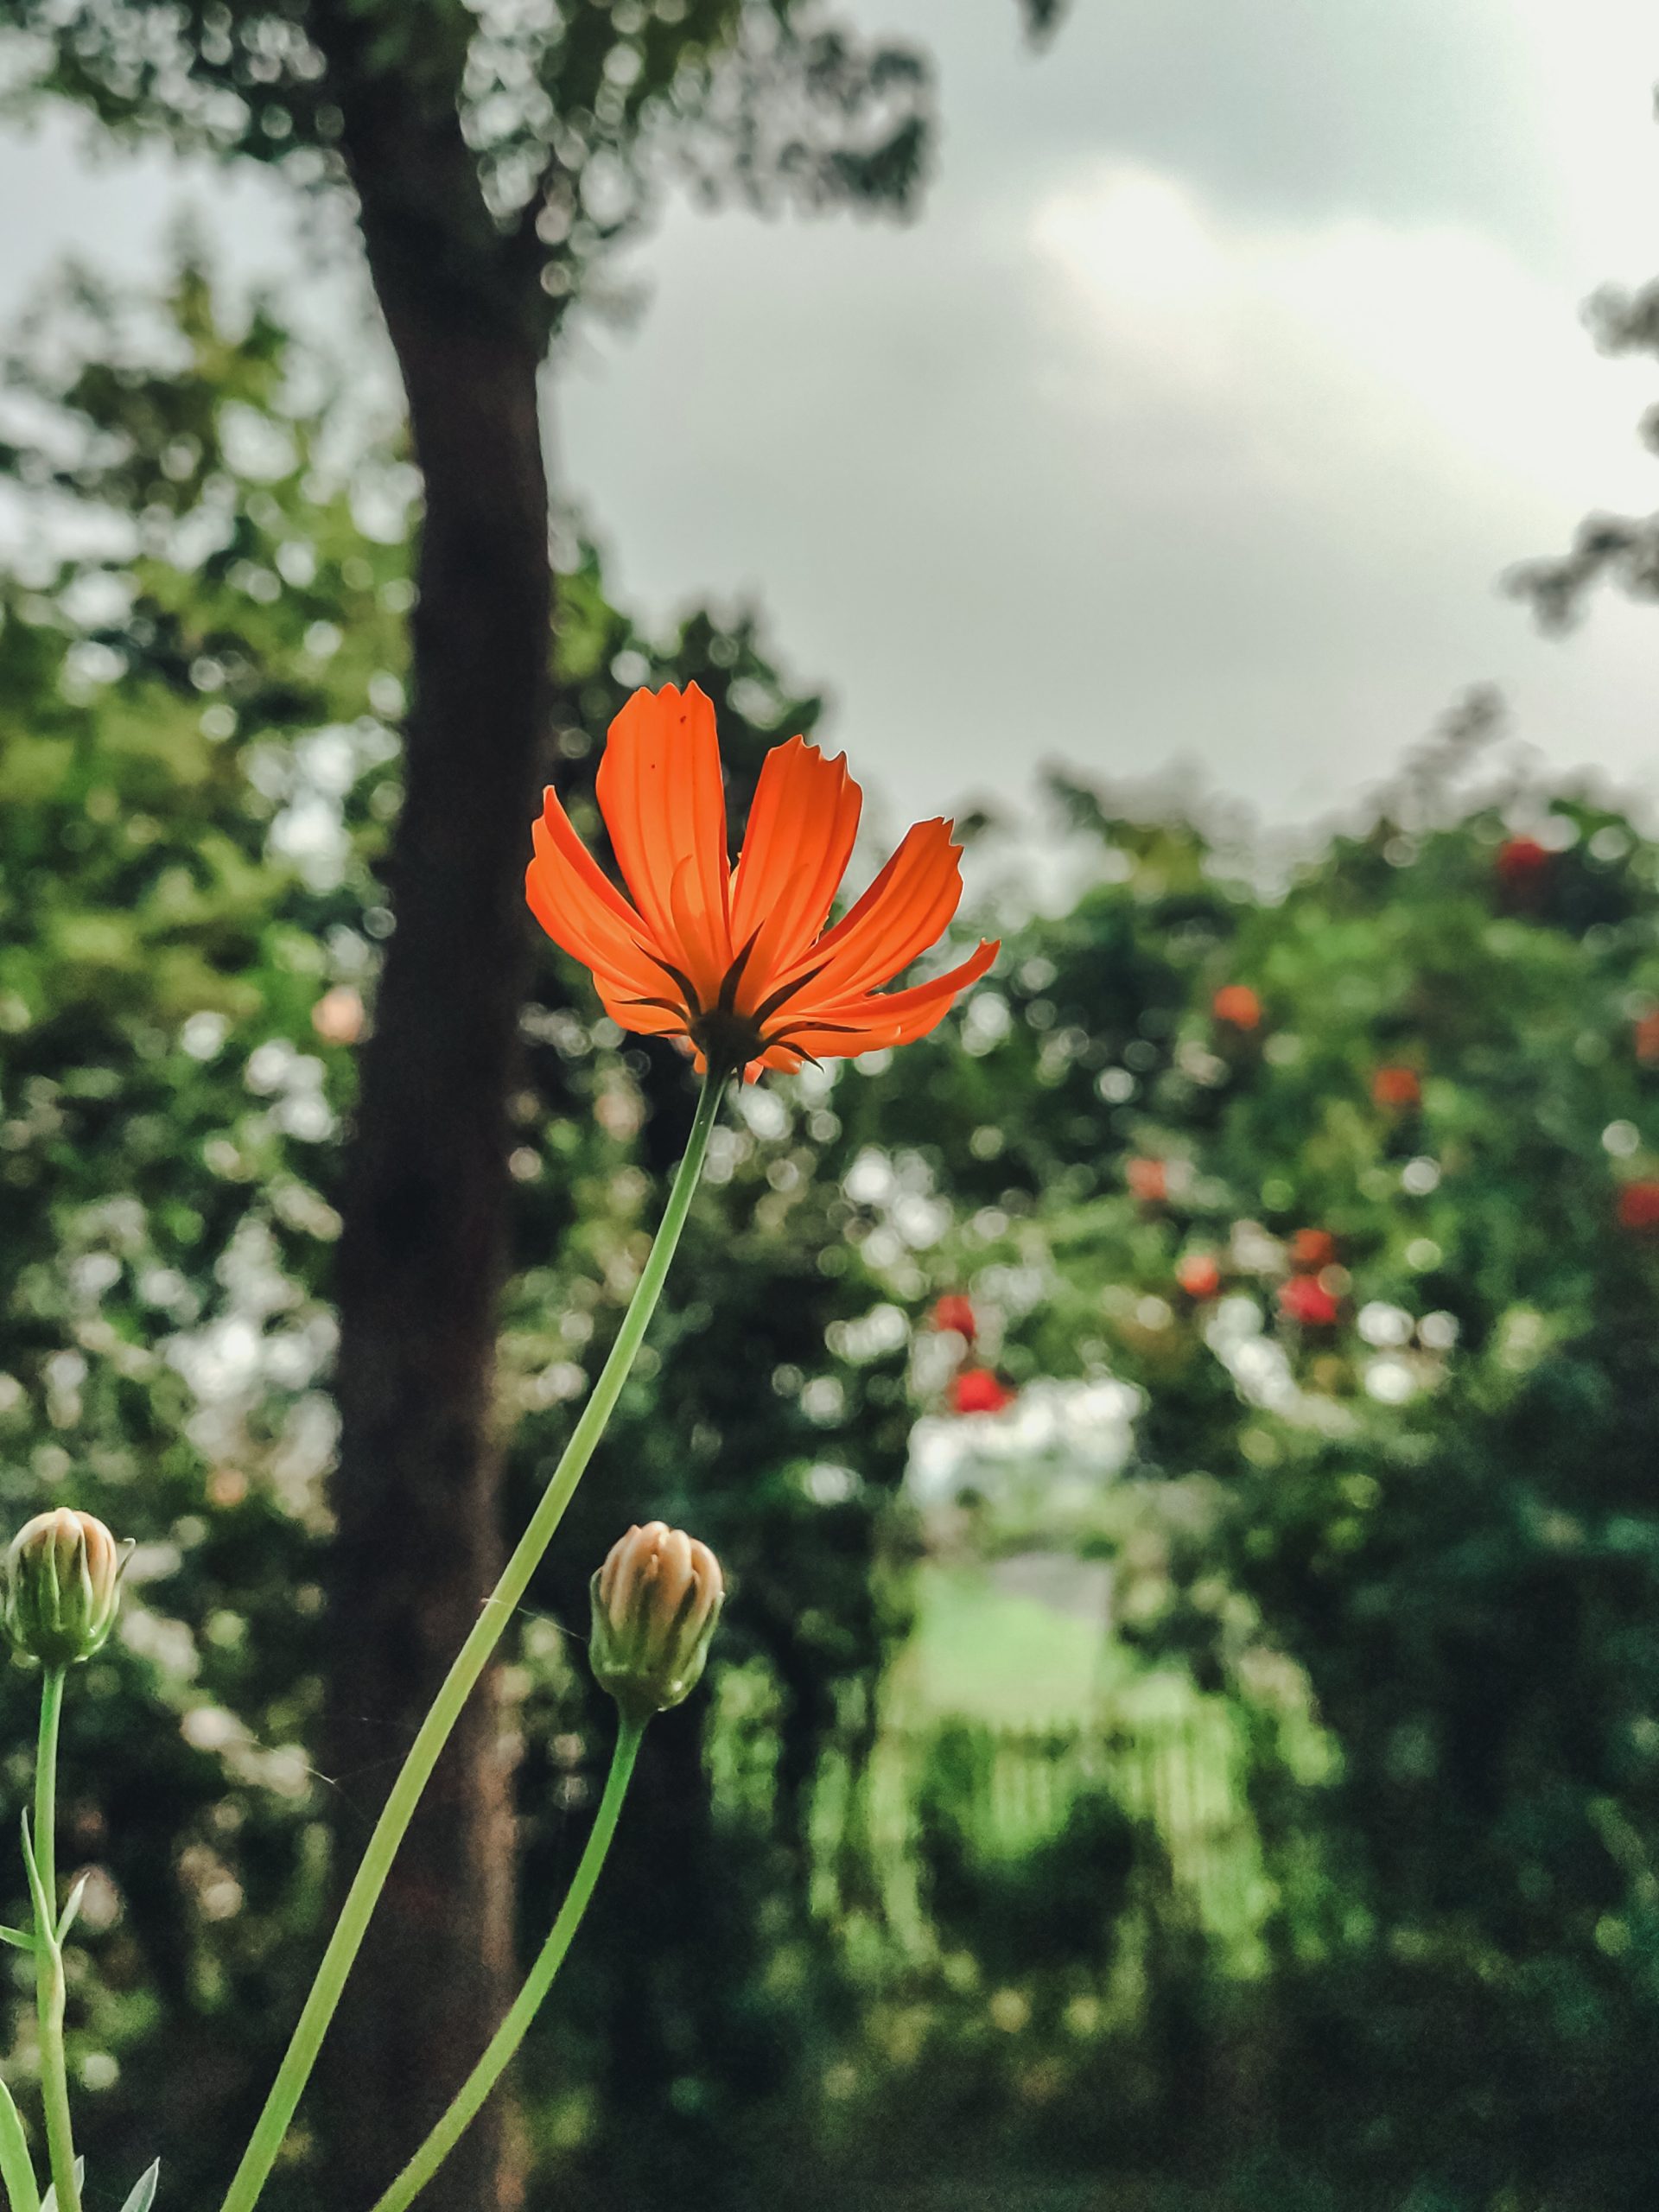 A orange flower